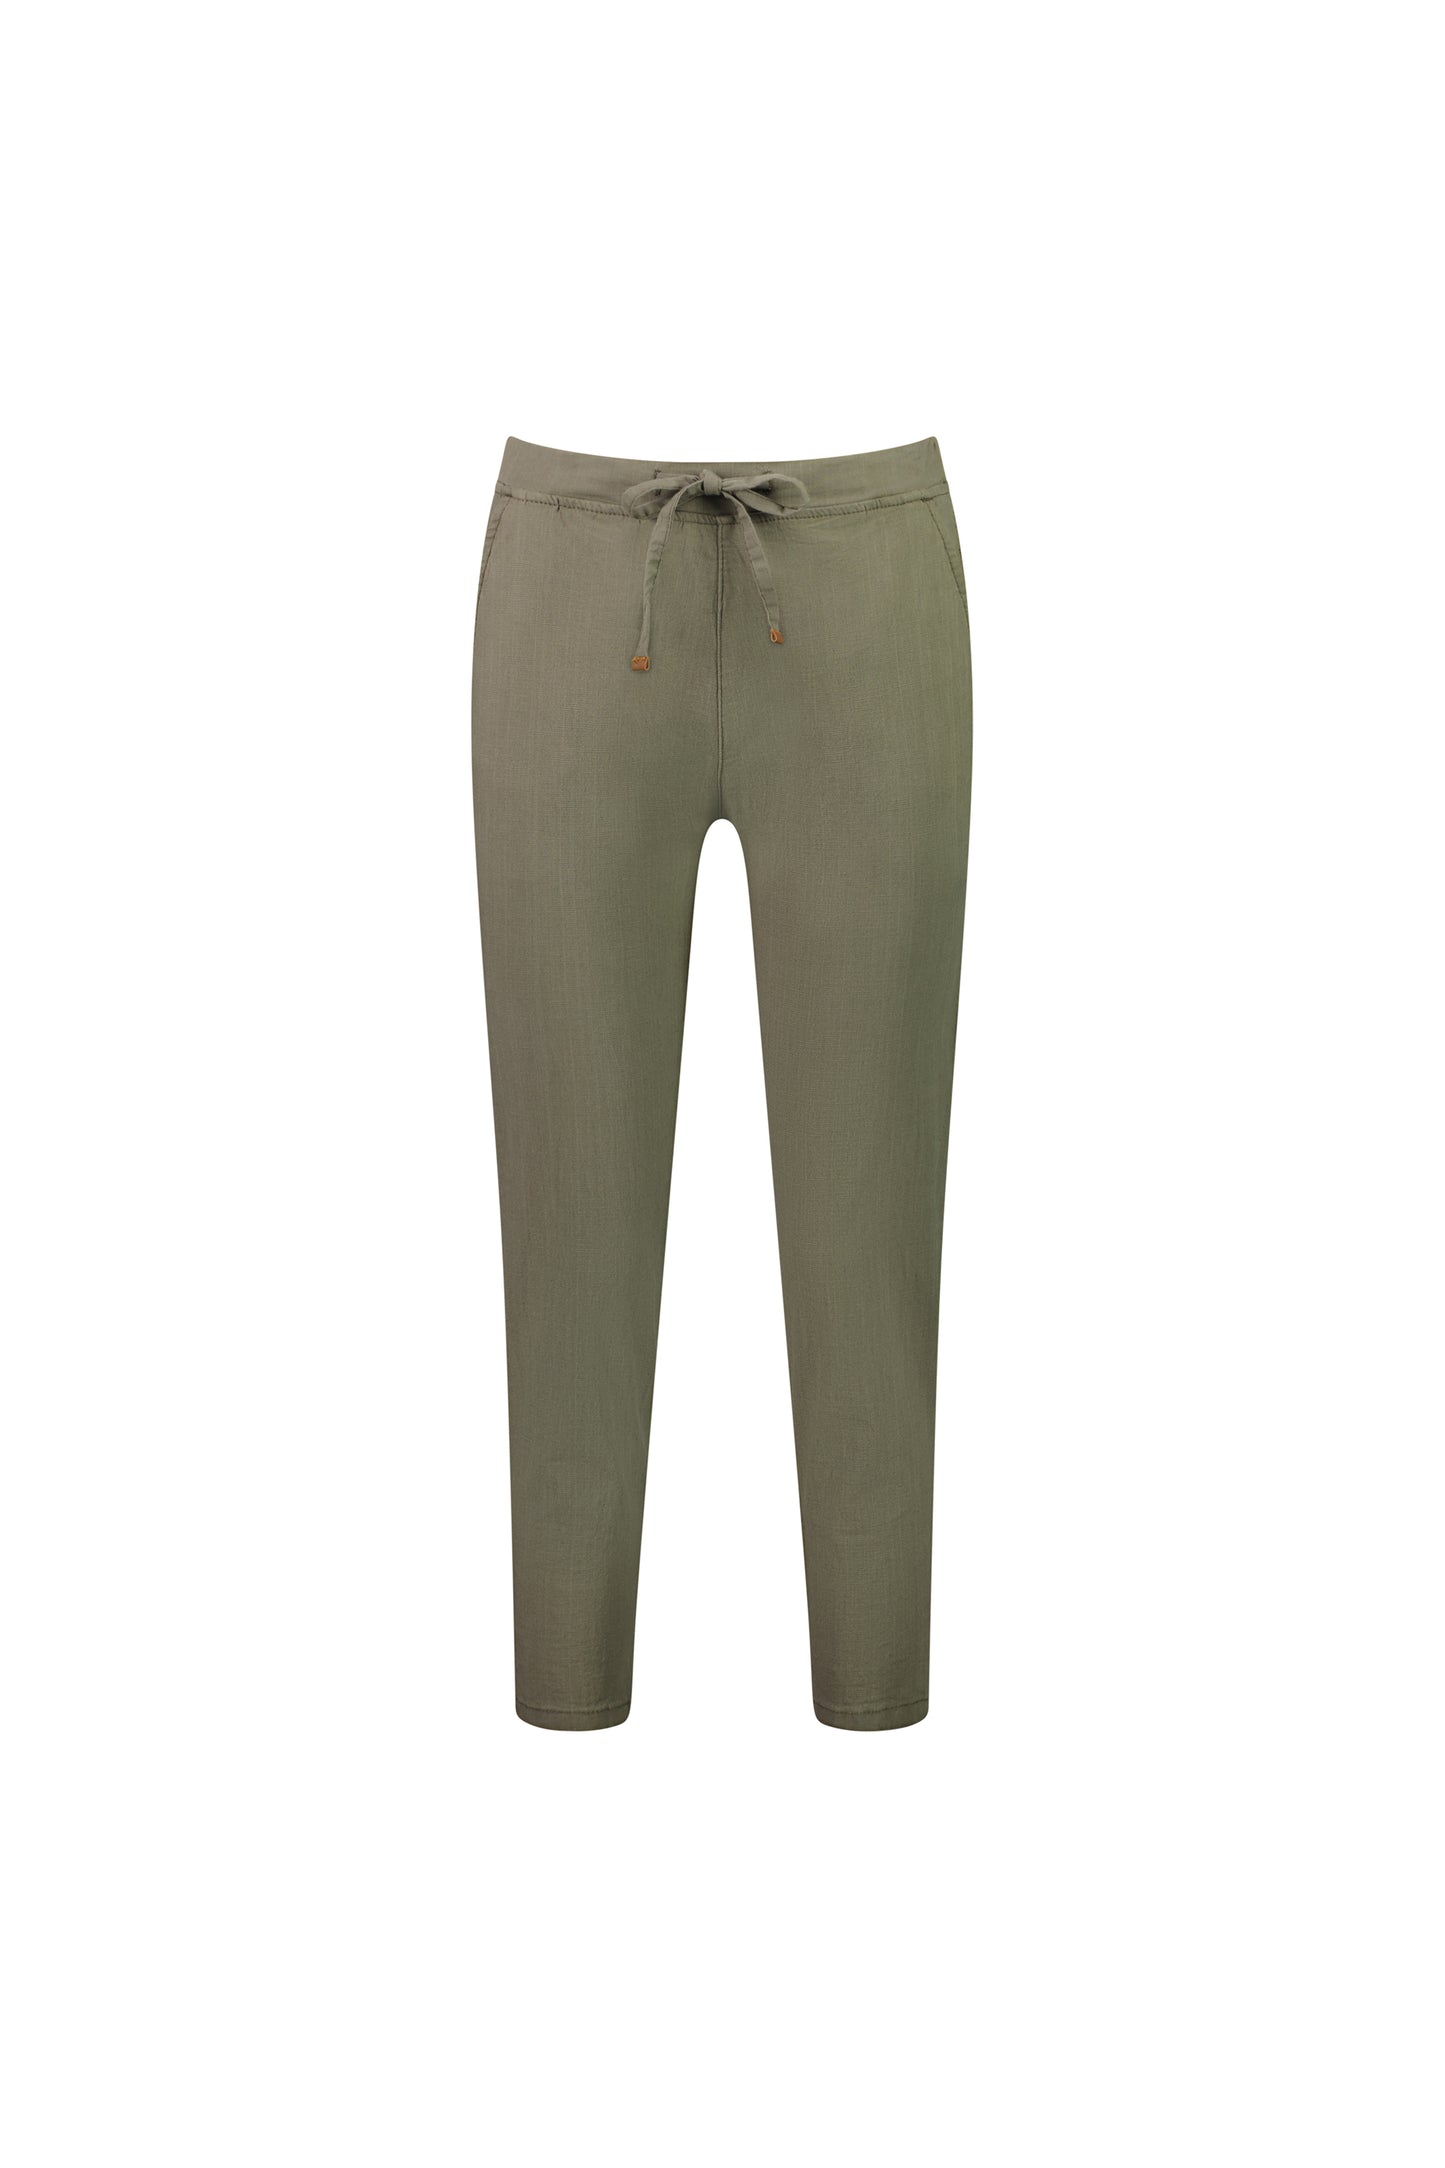 Vassalli 5790 - 7/8 Elastic Waist Pant Linen Look Alike  - 4 colourways - 50% OFF